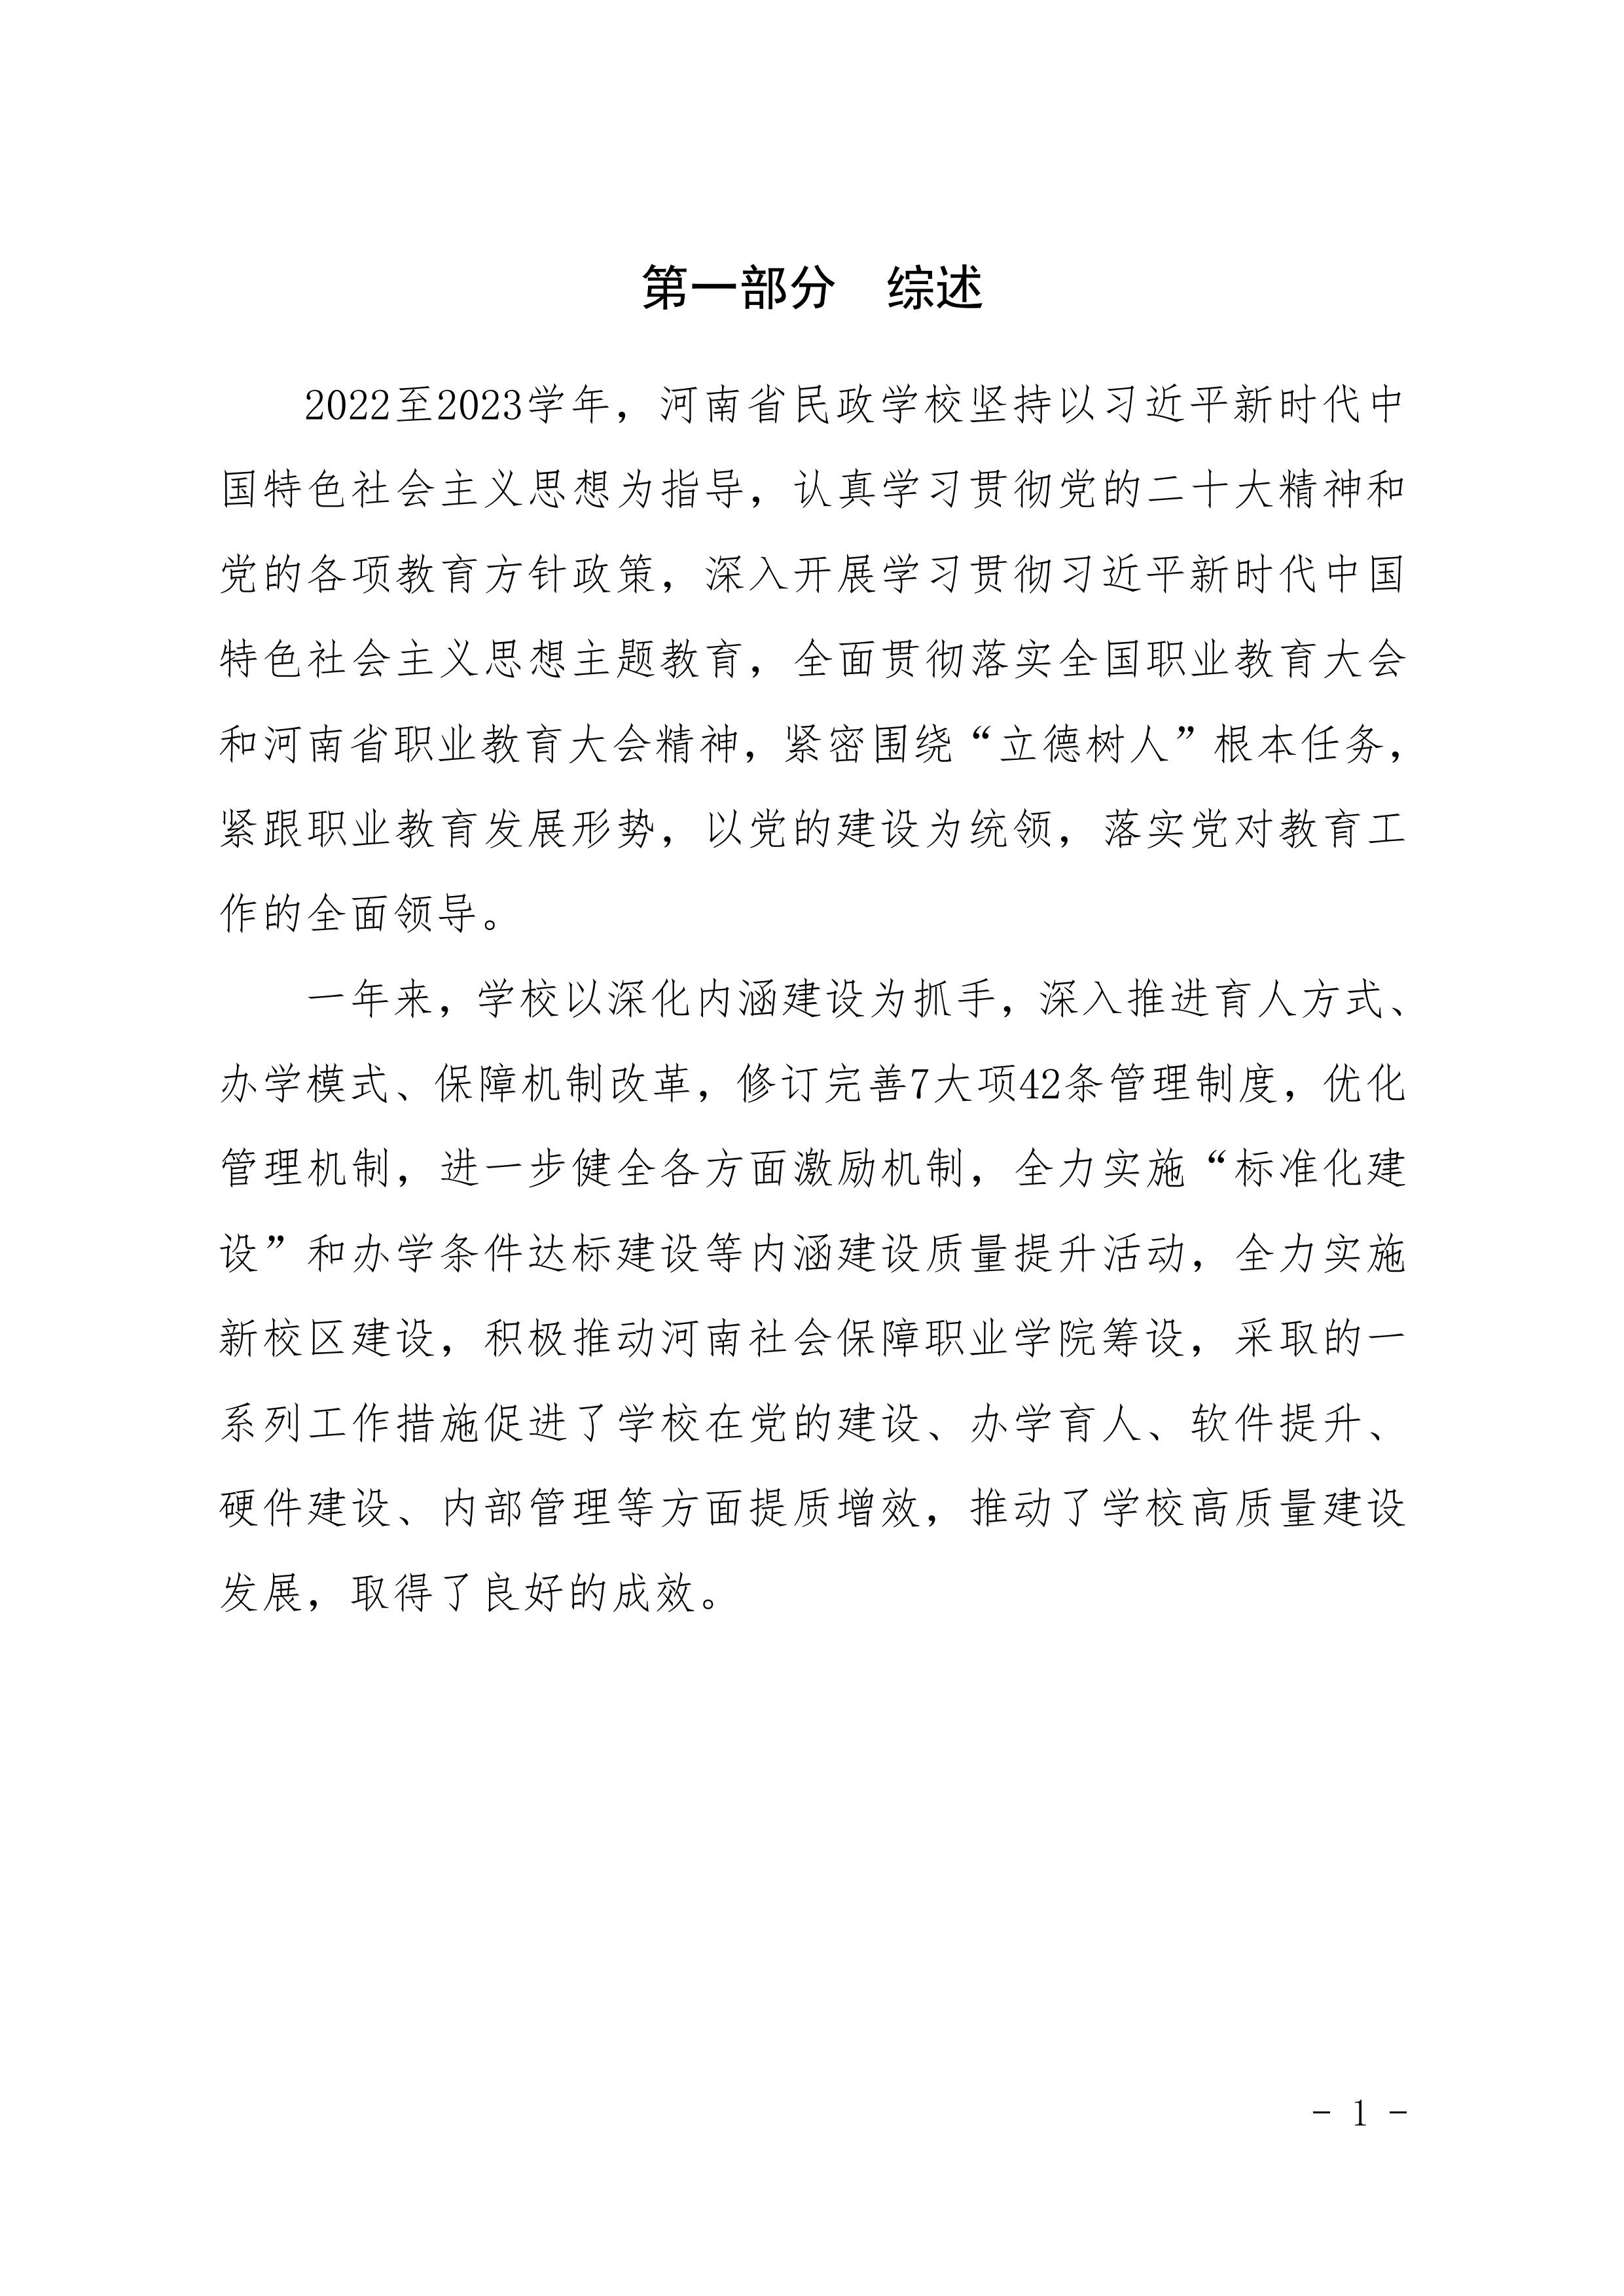 河南省民政学校职业教育质量报告（2023年度）发布版_04.jpg